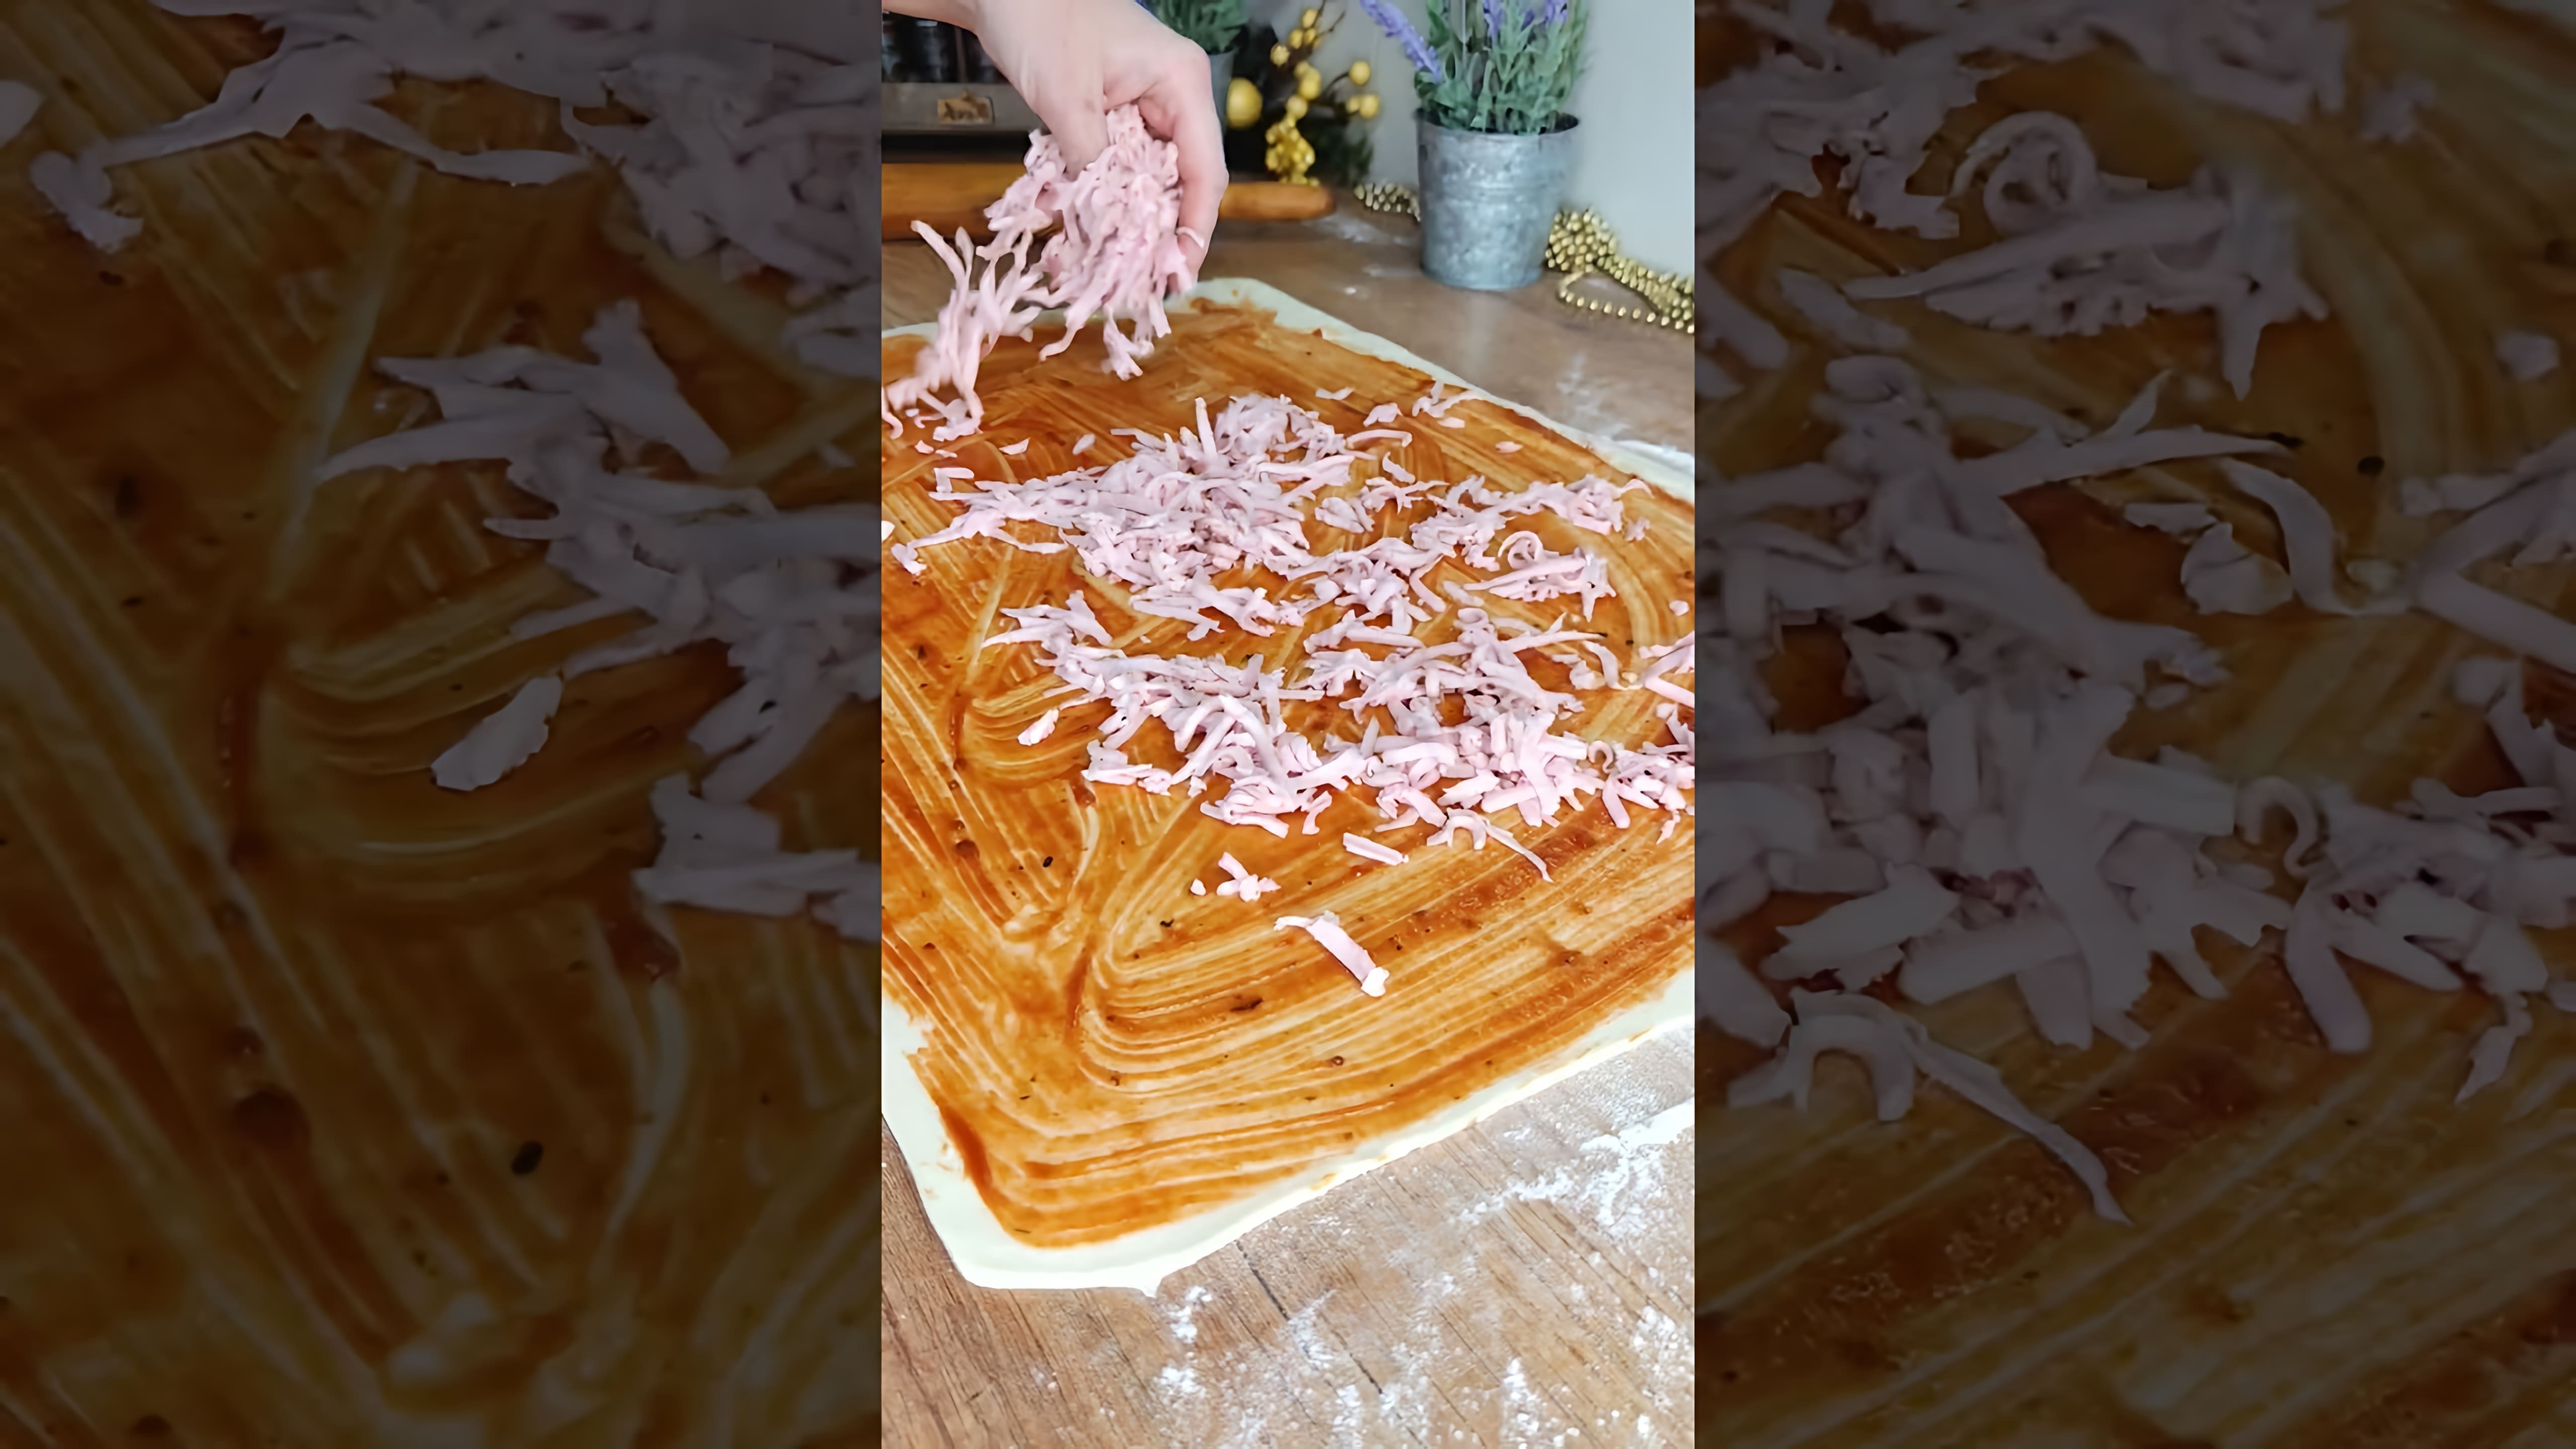 #слойки с колбасой и сыром 🧀 - это видео-ролик, который демонстрирует процесс приготовления вкусных и аппетитных слоек с колбасой и сыром